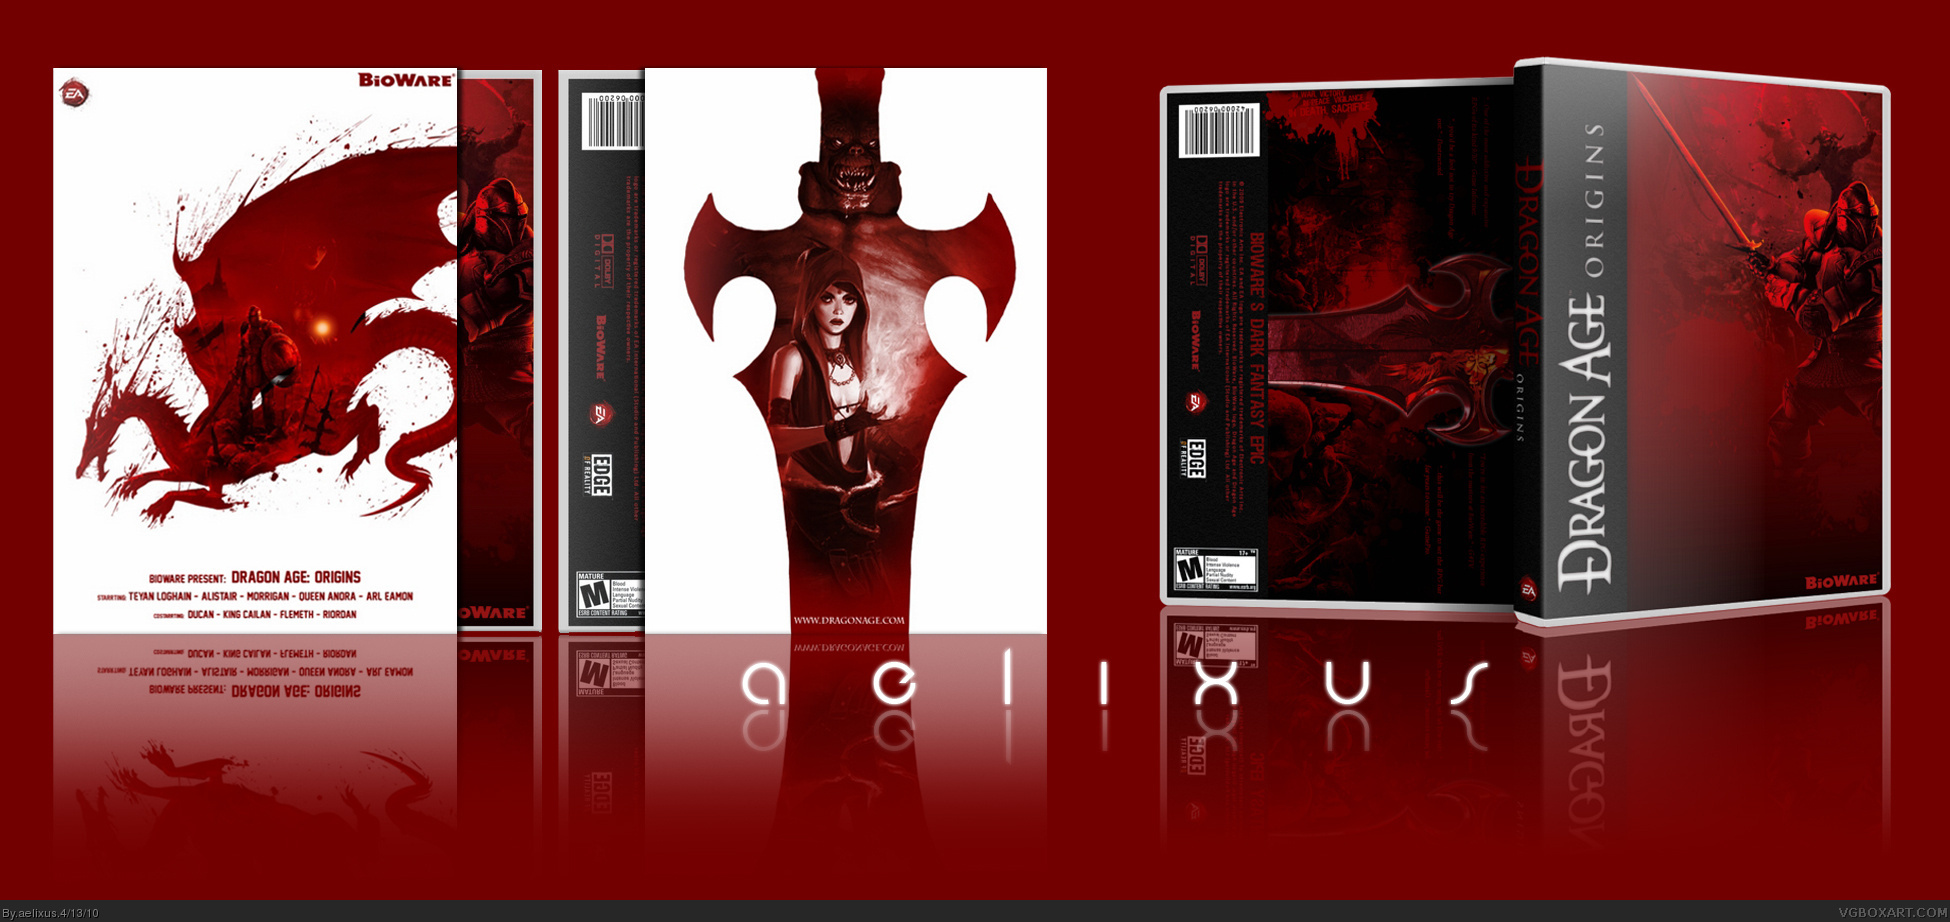 Dragon Age - Origins box cover